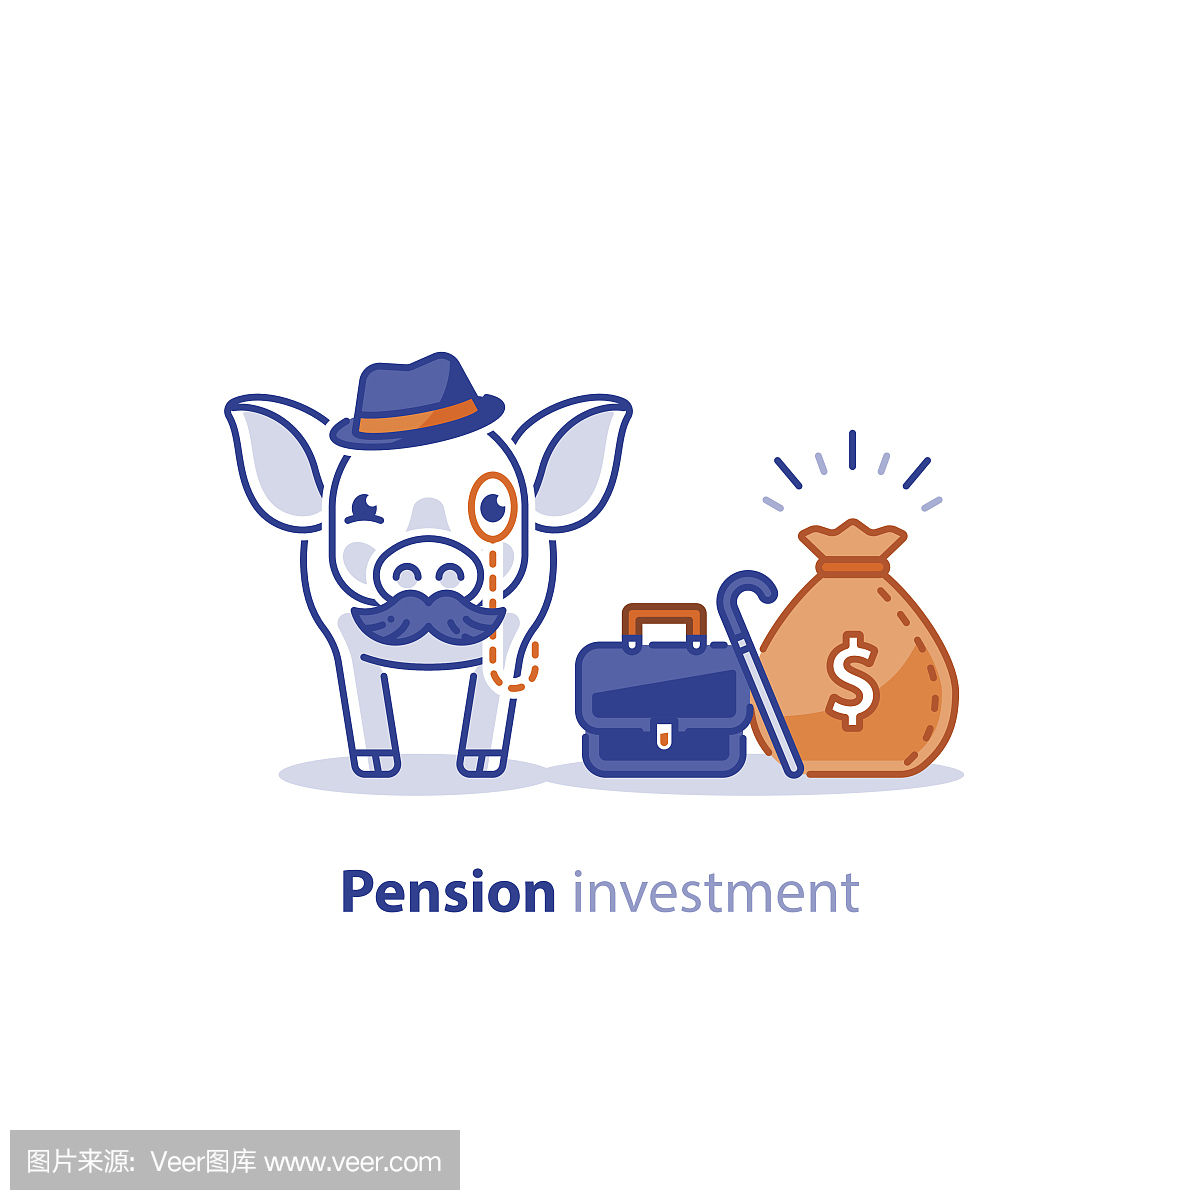 智慧猪帽与胡子,养老基金,养老金储蓄投资计划